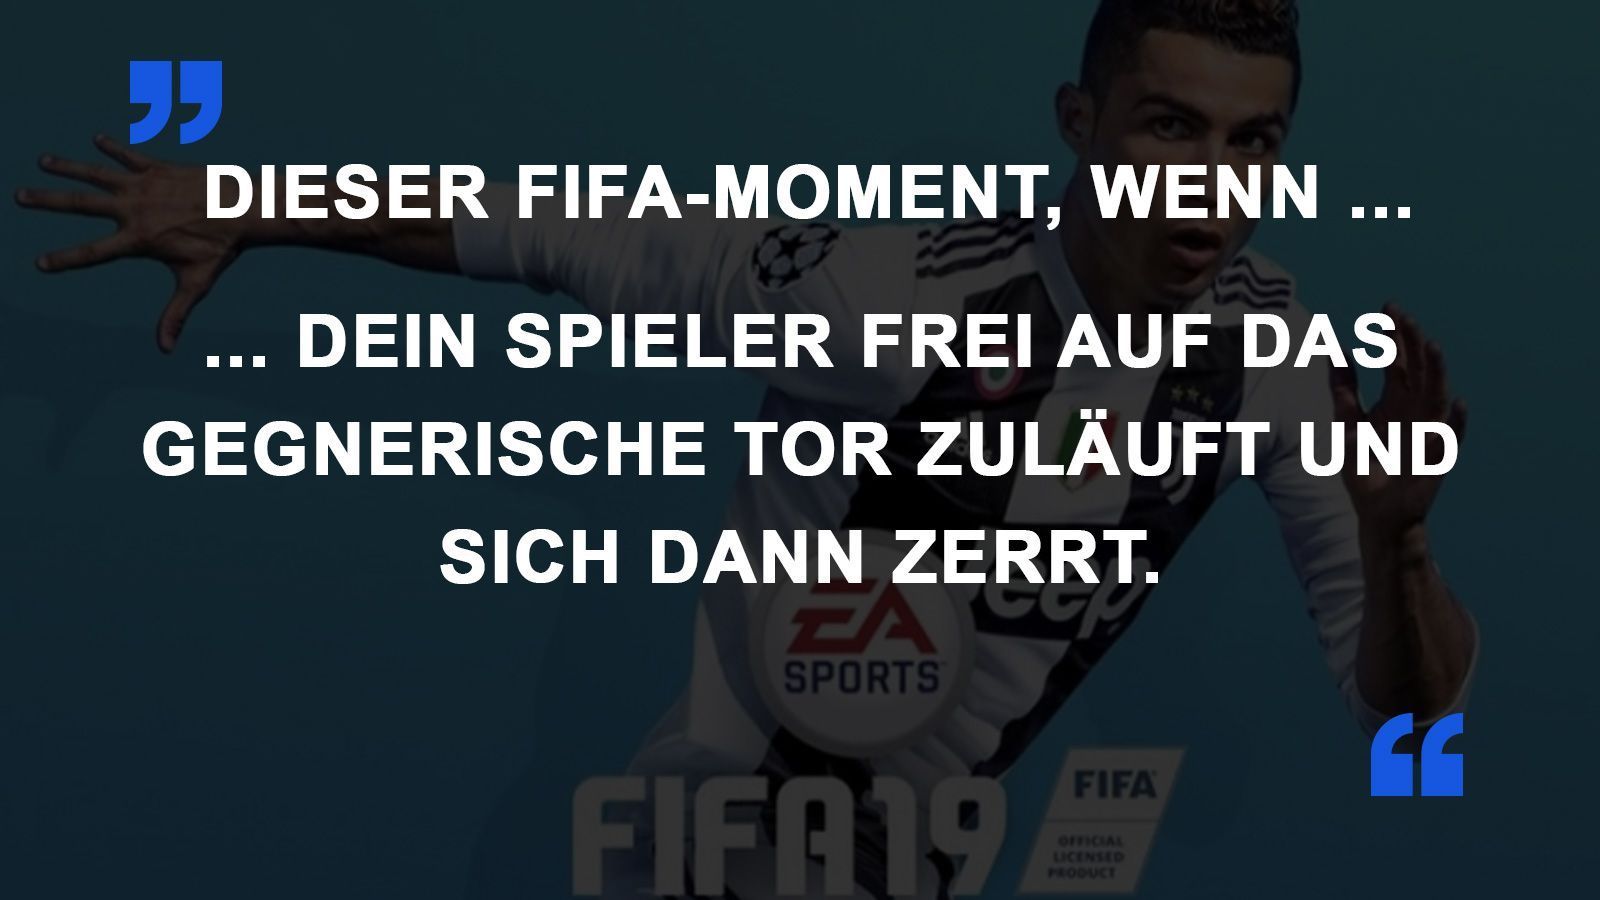 
                <strong>FIFA Momente Zerrung</strong><br>
                
              